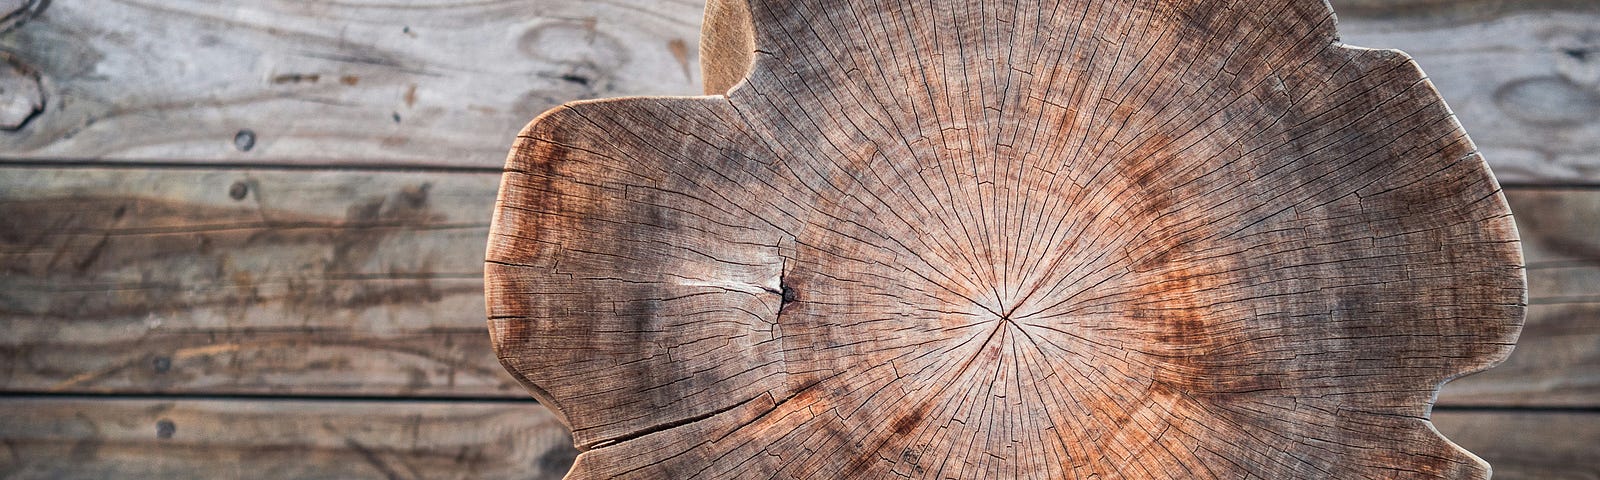 tree stump on wooden deck